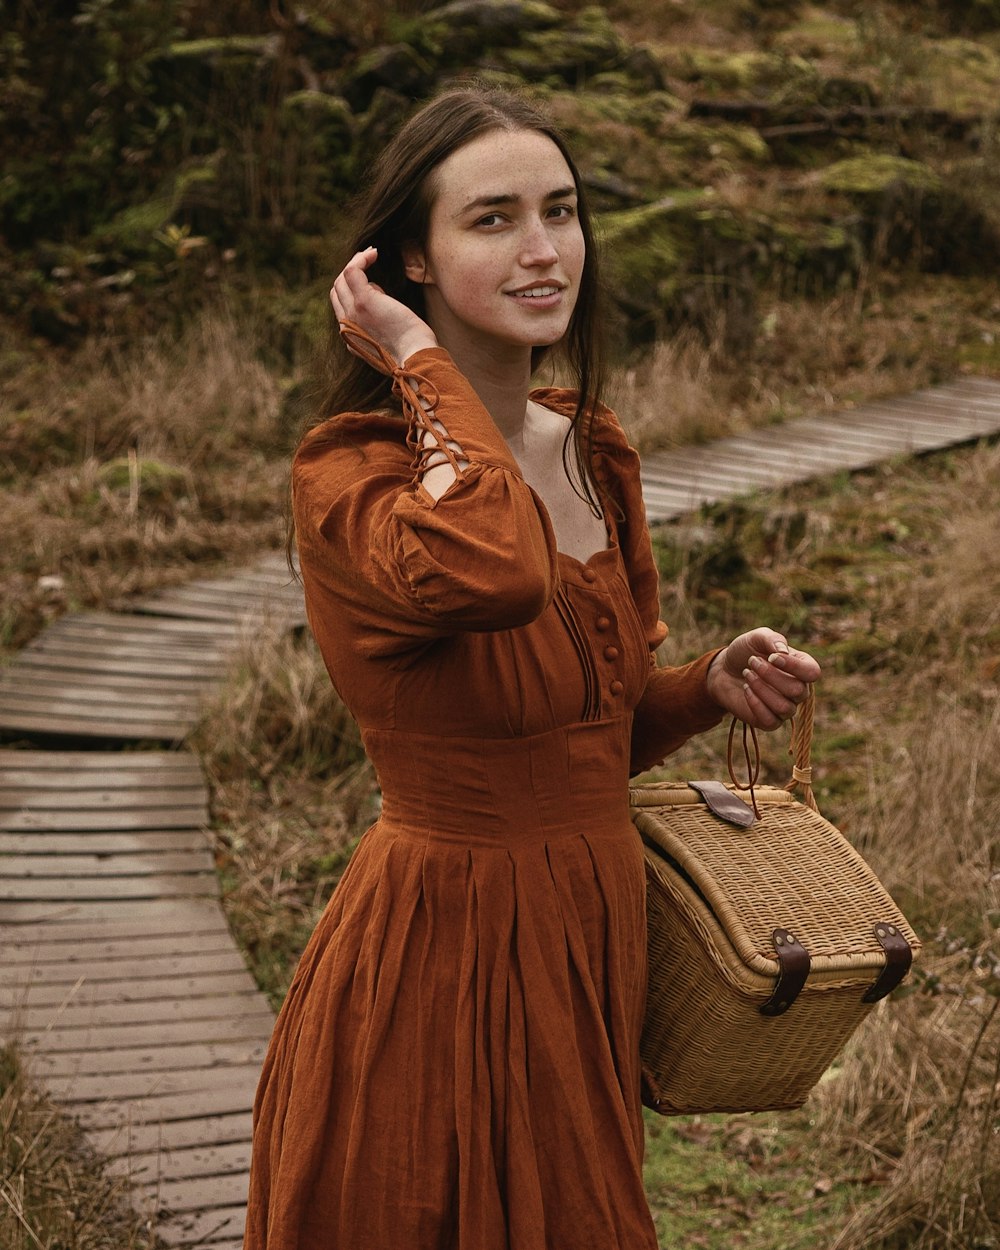 Eine Frau in einem orangefarbenen Kleid hält einen Korb in der Hand